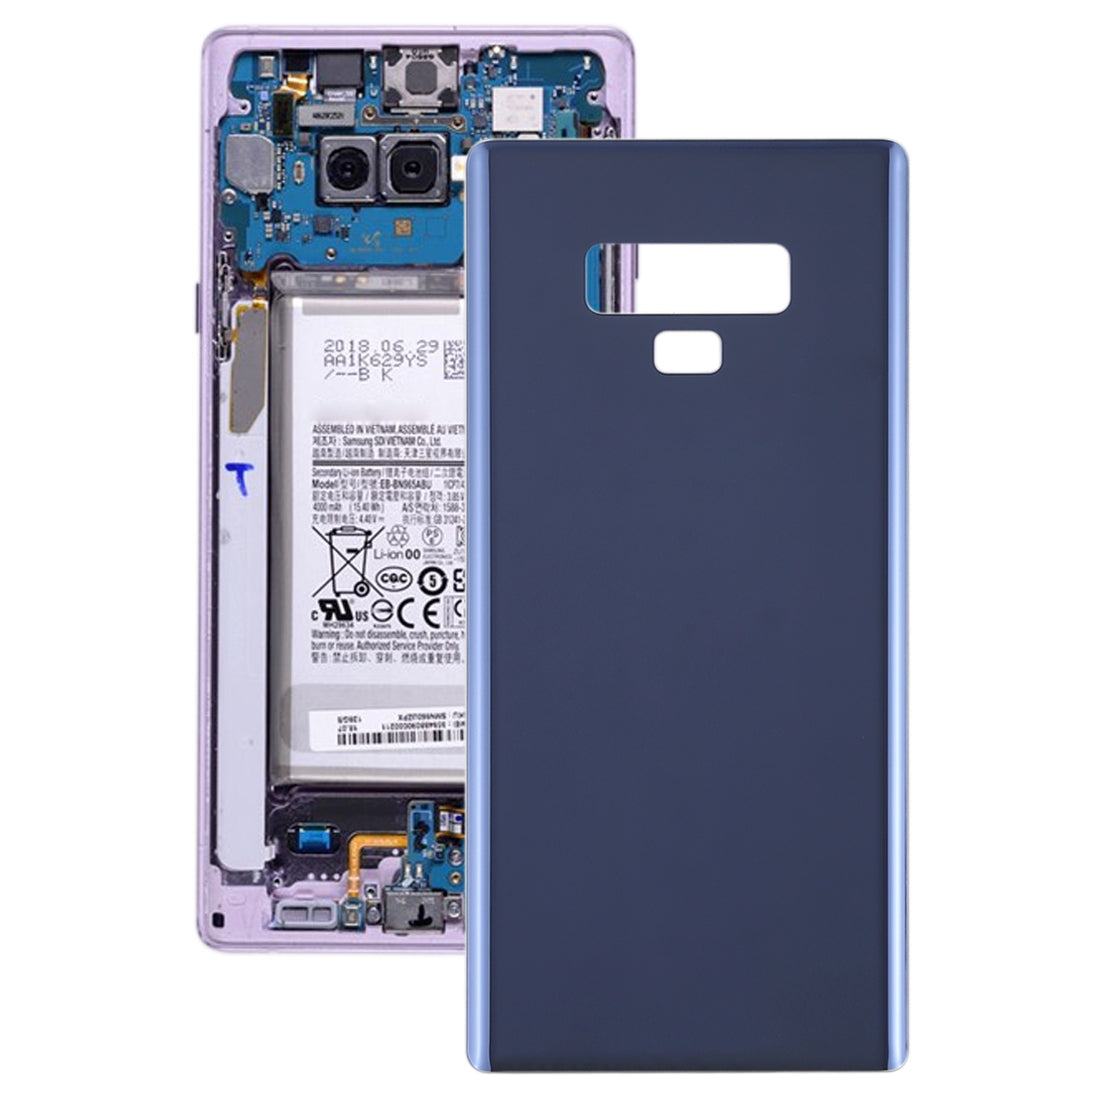 Tapa Bateria Back Cover Samsung Galaxy Note 9 / N960A / N960F Azul